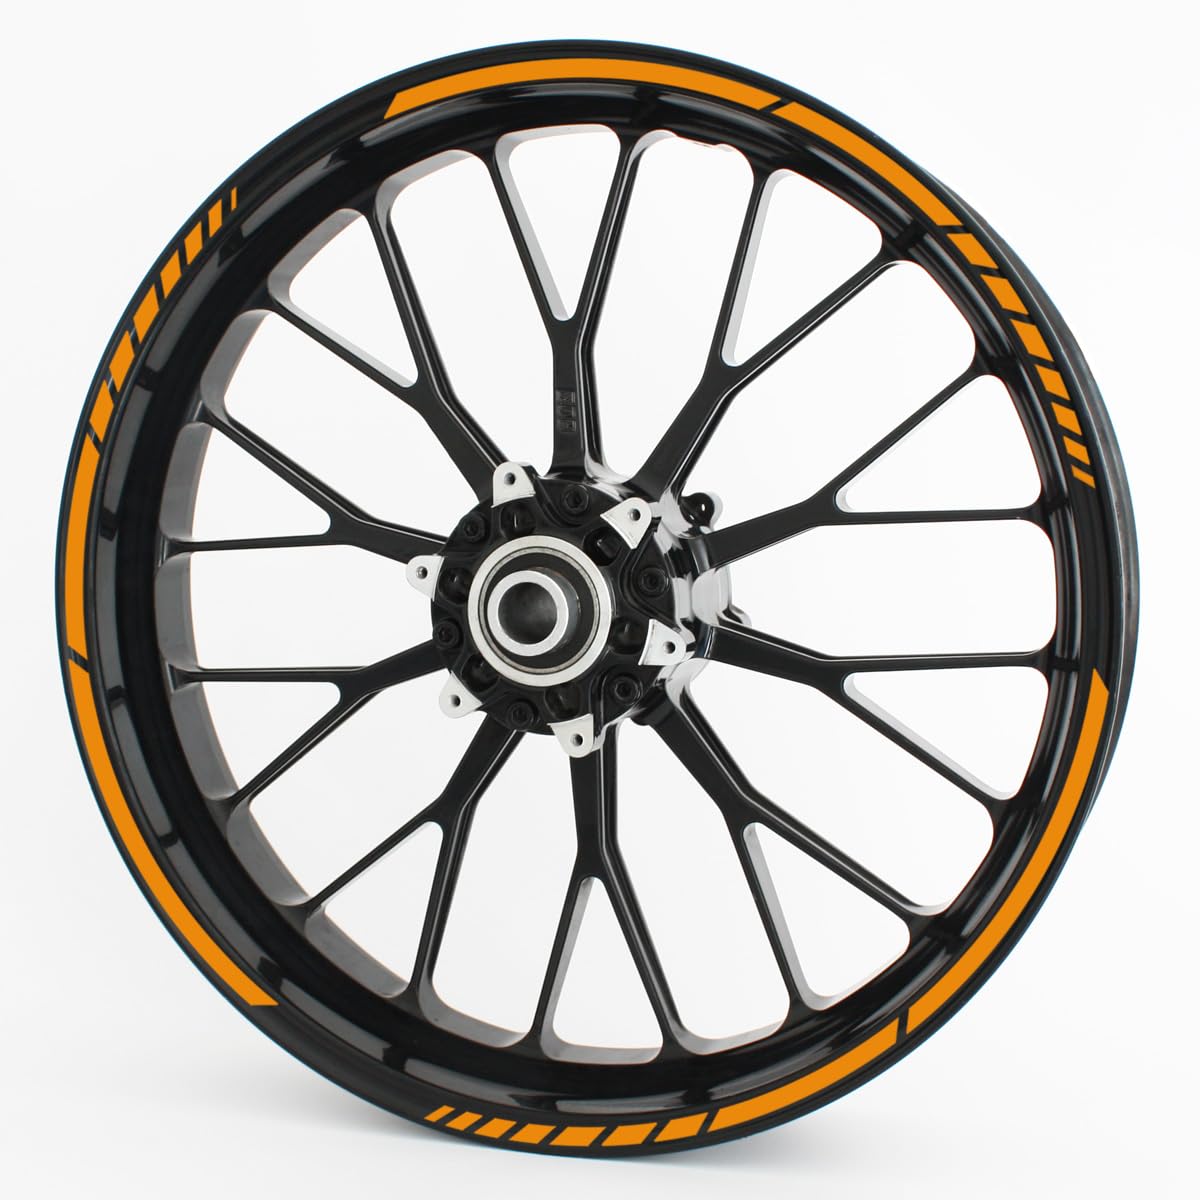 Felgenrandaufkleber GP im GP-Design passend für 15 Zoll Felgen für Motorrad, Auto & mehr - Orange matt von Motoking